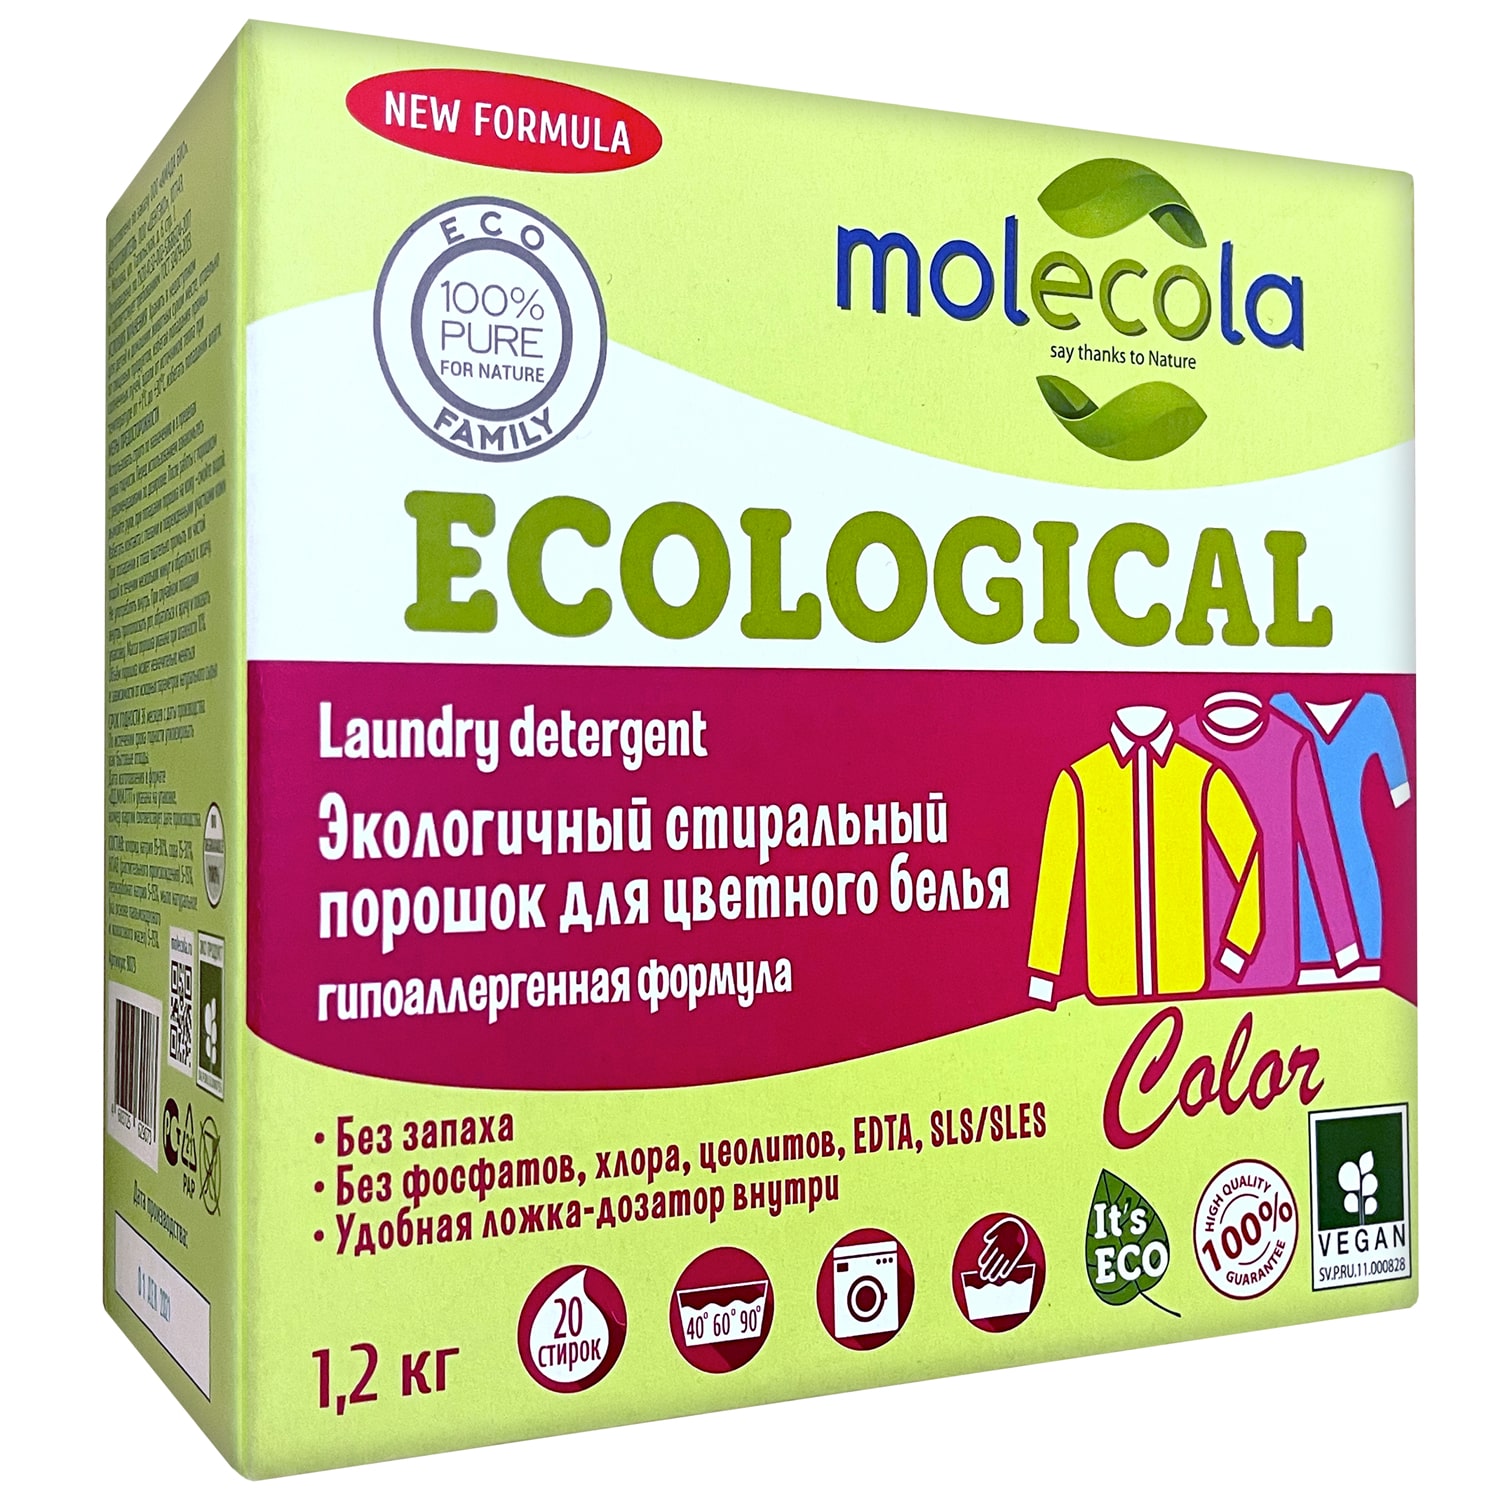 Molecola Стиральный порошок для цветного белья с растительными энзимами, экологичный, 1,2 кг (Molecola, Для стирки) порошок стиральный molecola для цветного белья экологичный 1 2 кг